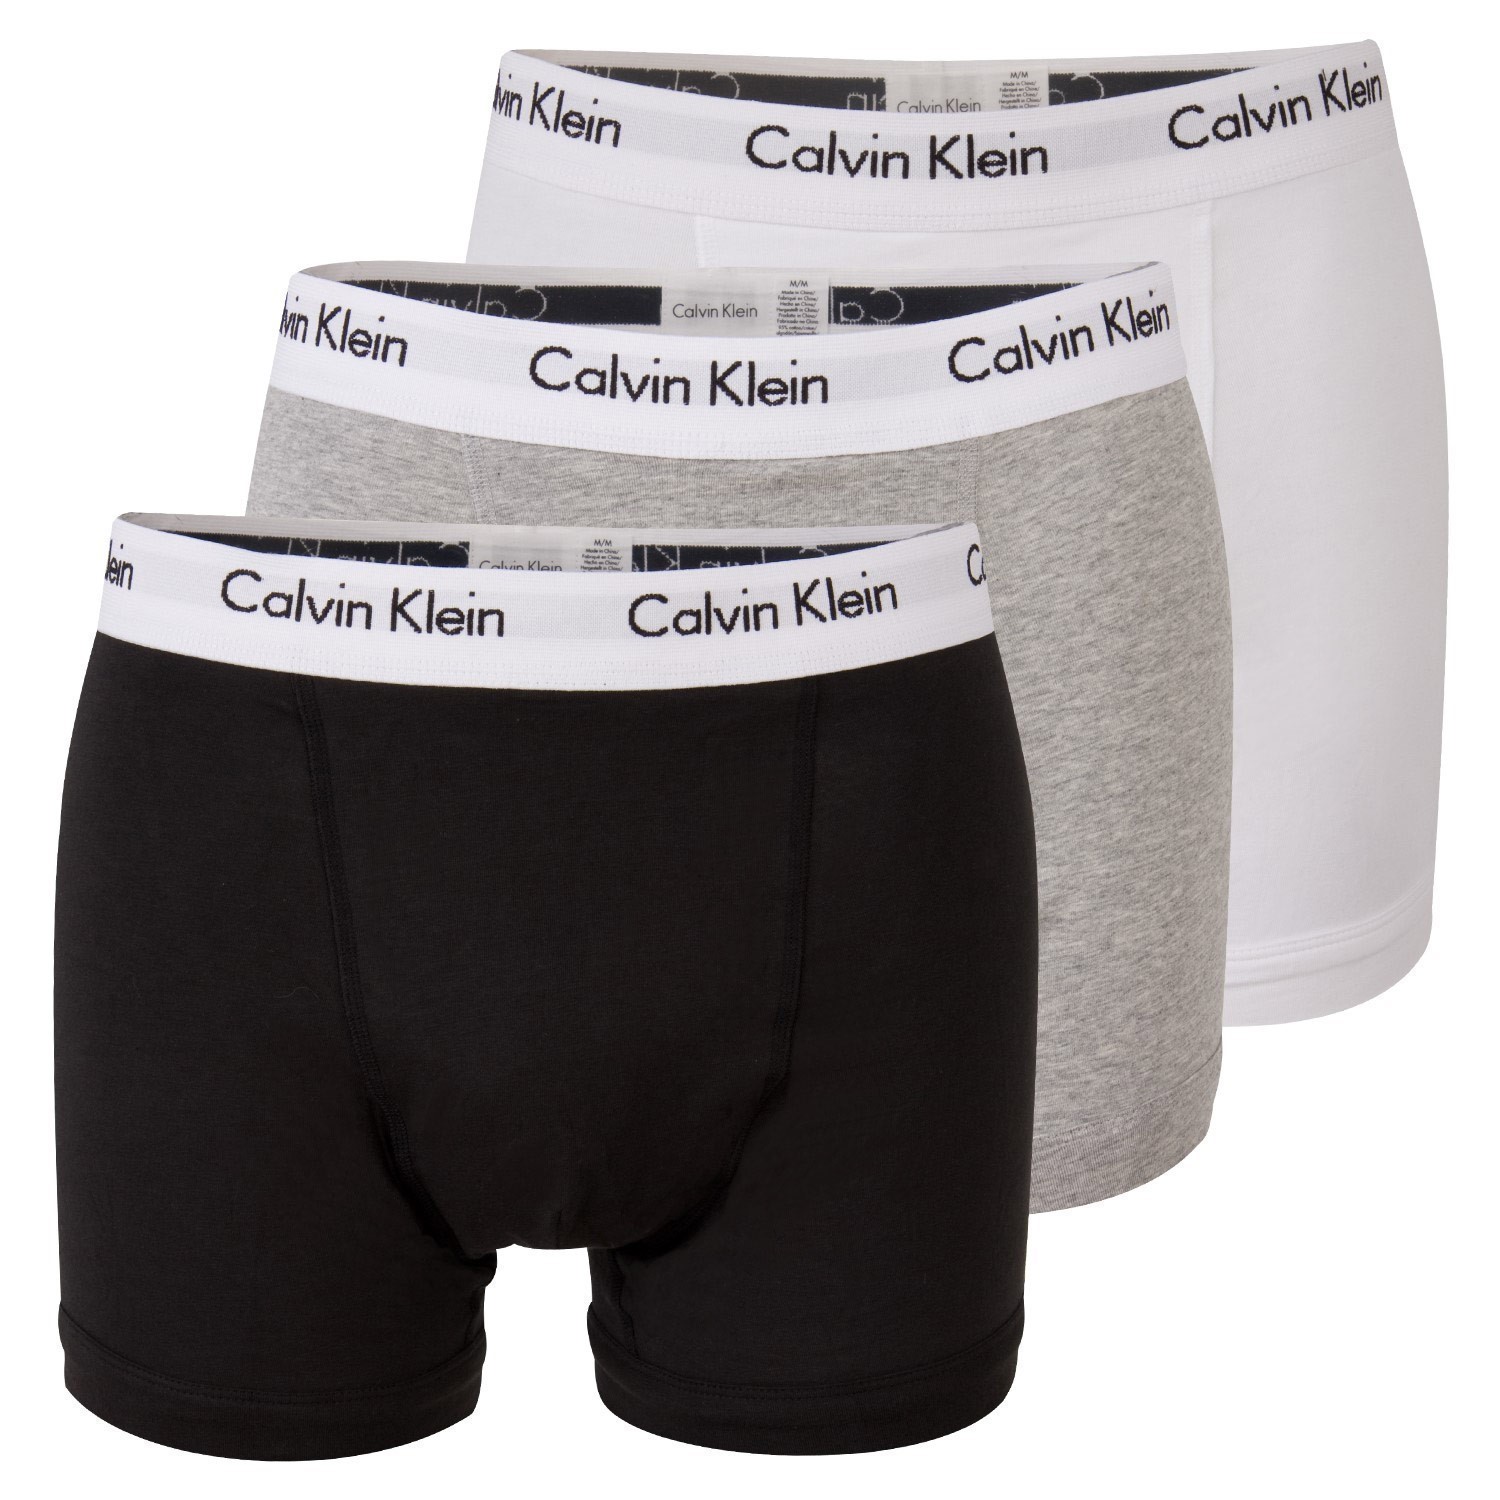 Calvin Klein 3pk Boxer Trunk sort/hvit/grå